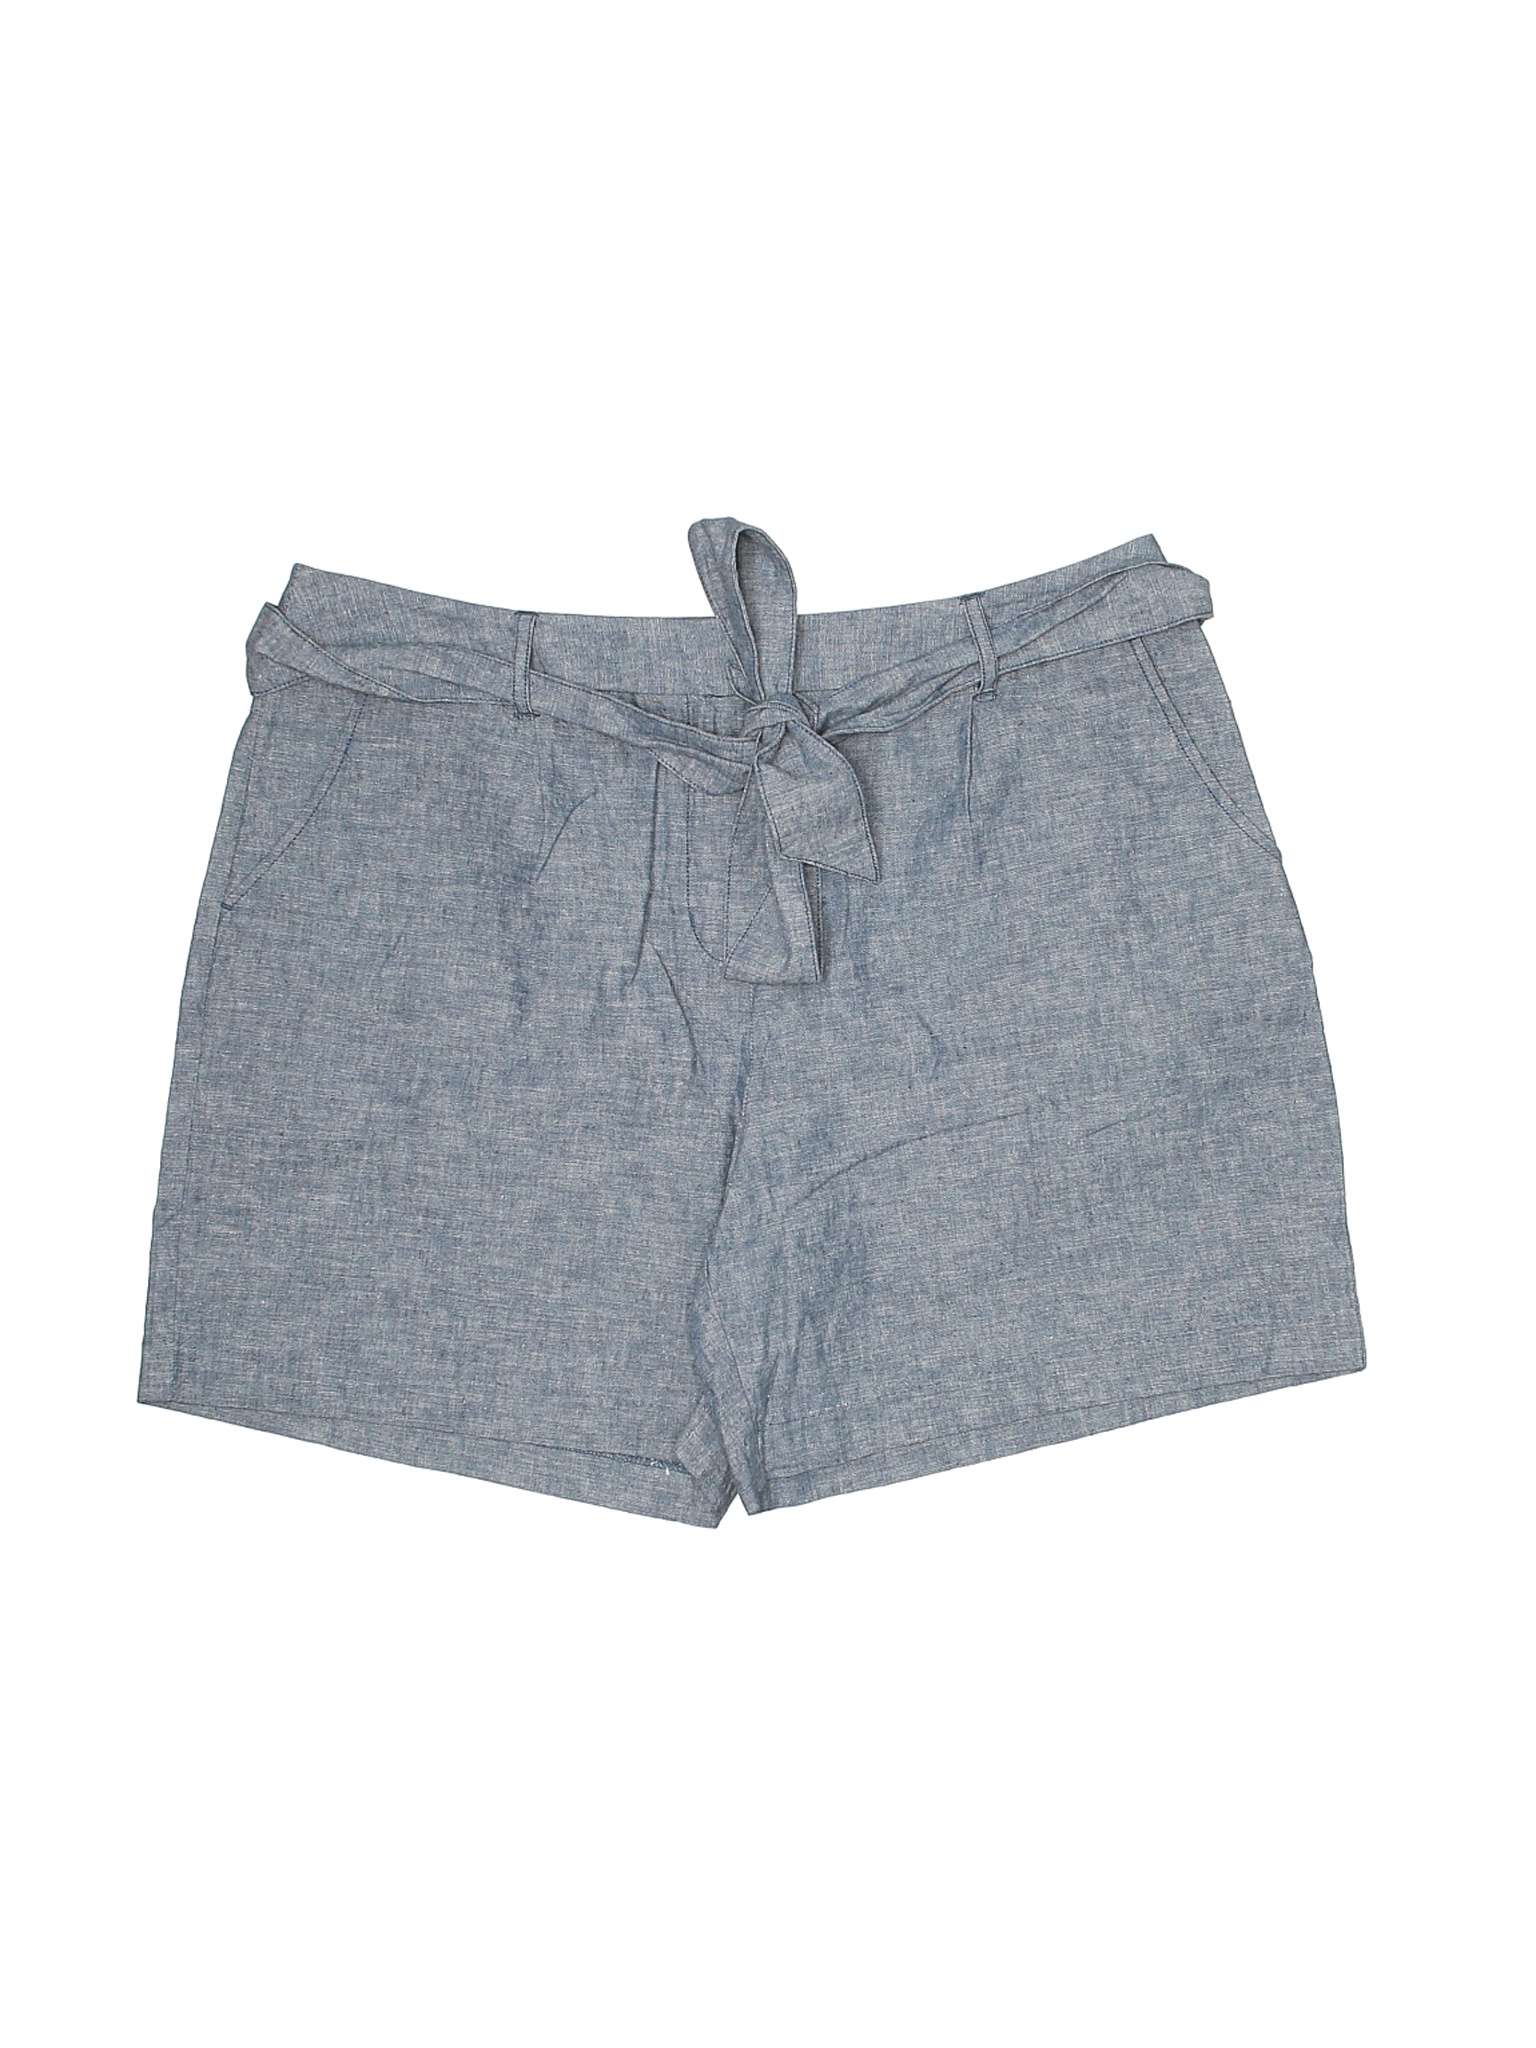 Boden Women Gray Shorts 12 | eBay